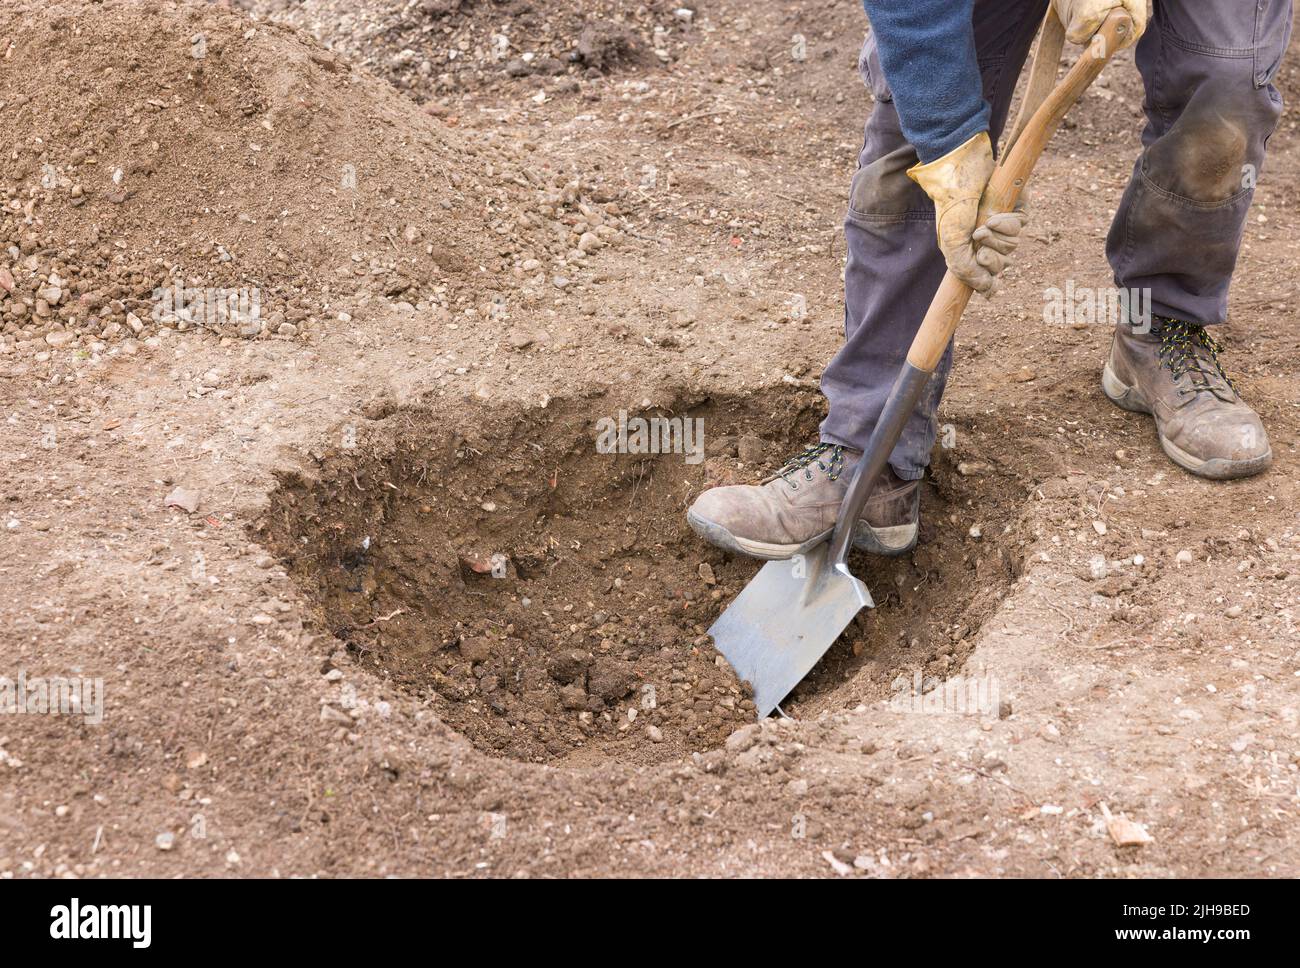 Gärtner, der mit einem Spaten ein Loch in den Boden gräbt, bereitet sich darauf vor, einen Baum in einem britischen Garten zu Pflanzen Stockfoto